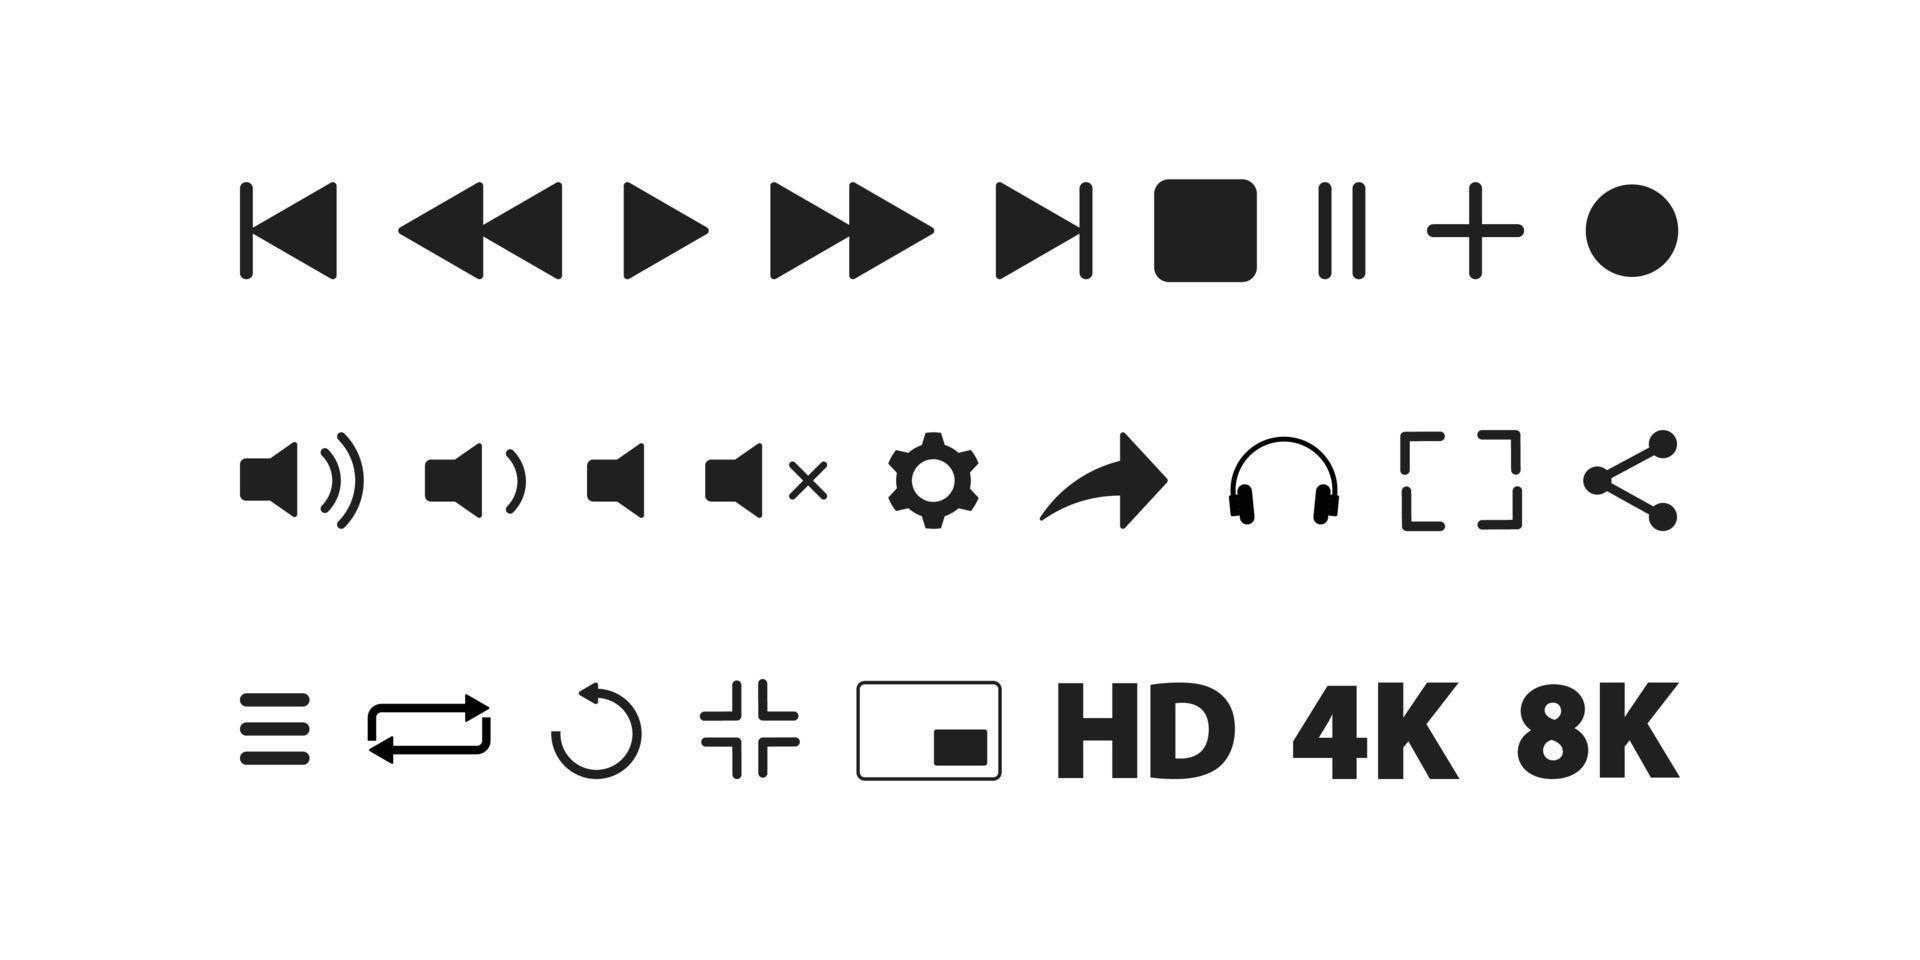 Video-Media-Player-Symbole Vektor-Set. Multimedia-Musik-Audiosteuerung. Symbole der Mediaplayer-Schnittstelle. spielen, pausieren, stummzeichen. isoliert auf weißem Hintergrund für Web, Präsentation, Logo, Symbolsymbol. vektor